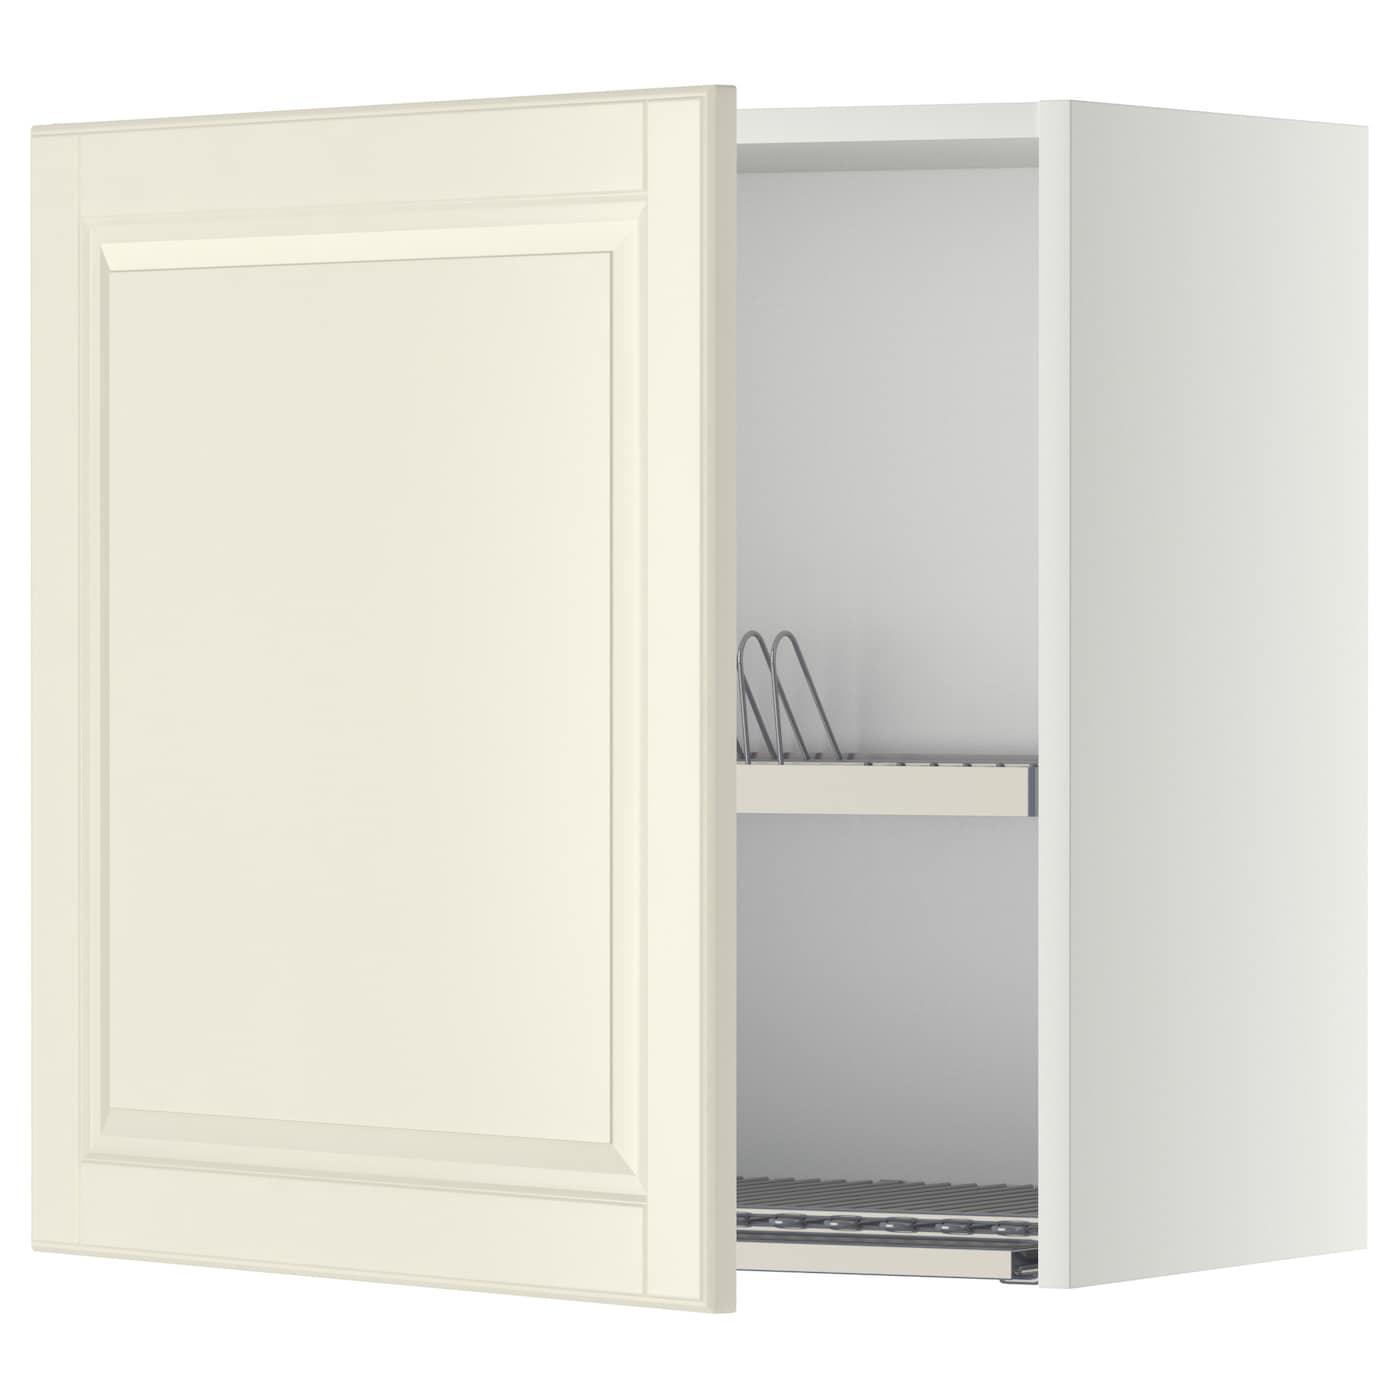 Навесной шкаф с сушилкой - METOD IKEA/ МЕТОД ИКЕА, 60х60 см, кремовый